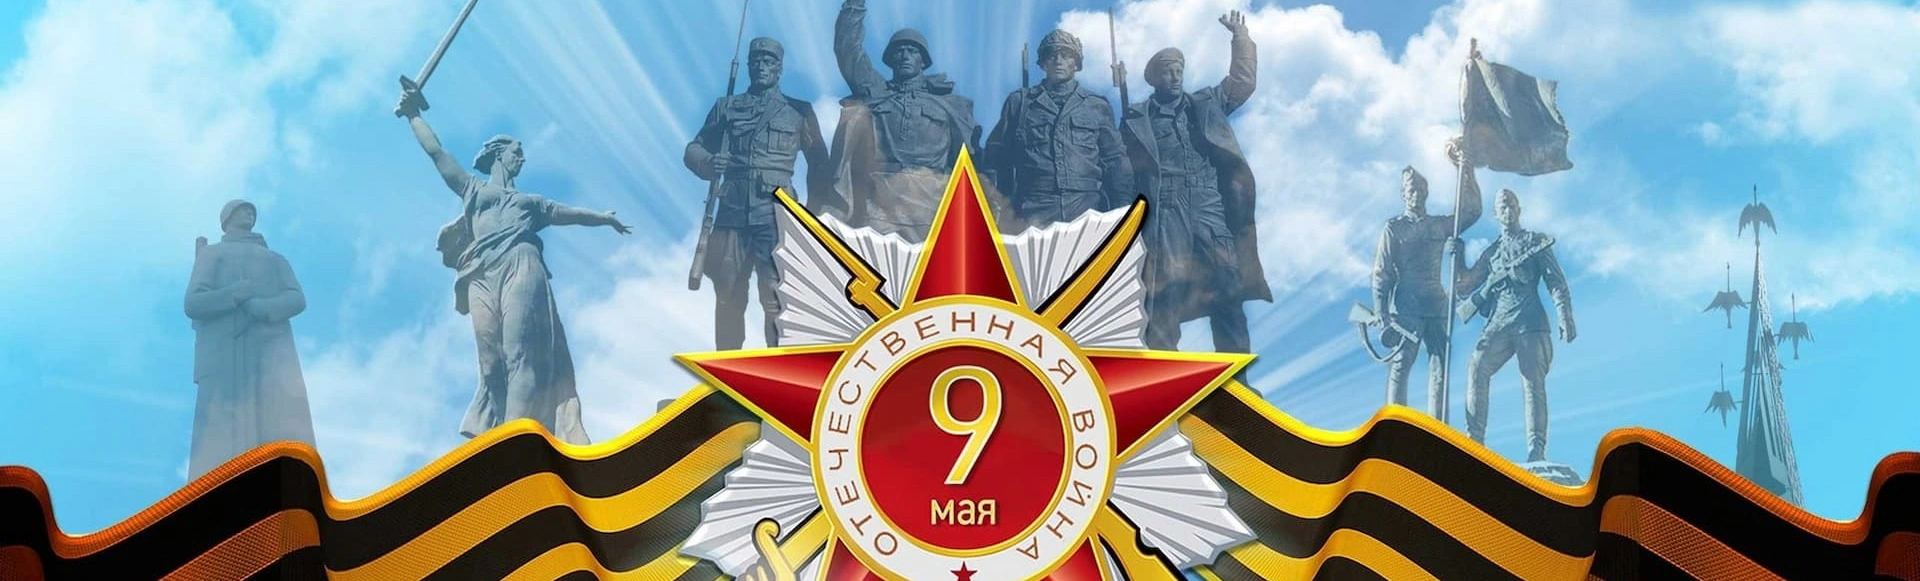 В Зимнем театре в Сочи отметили 77 годовщину Победы